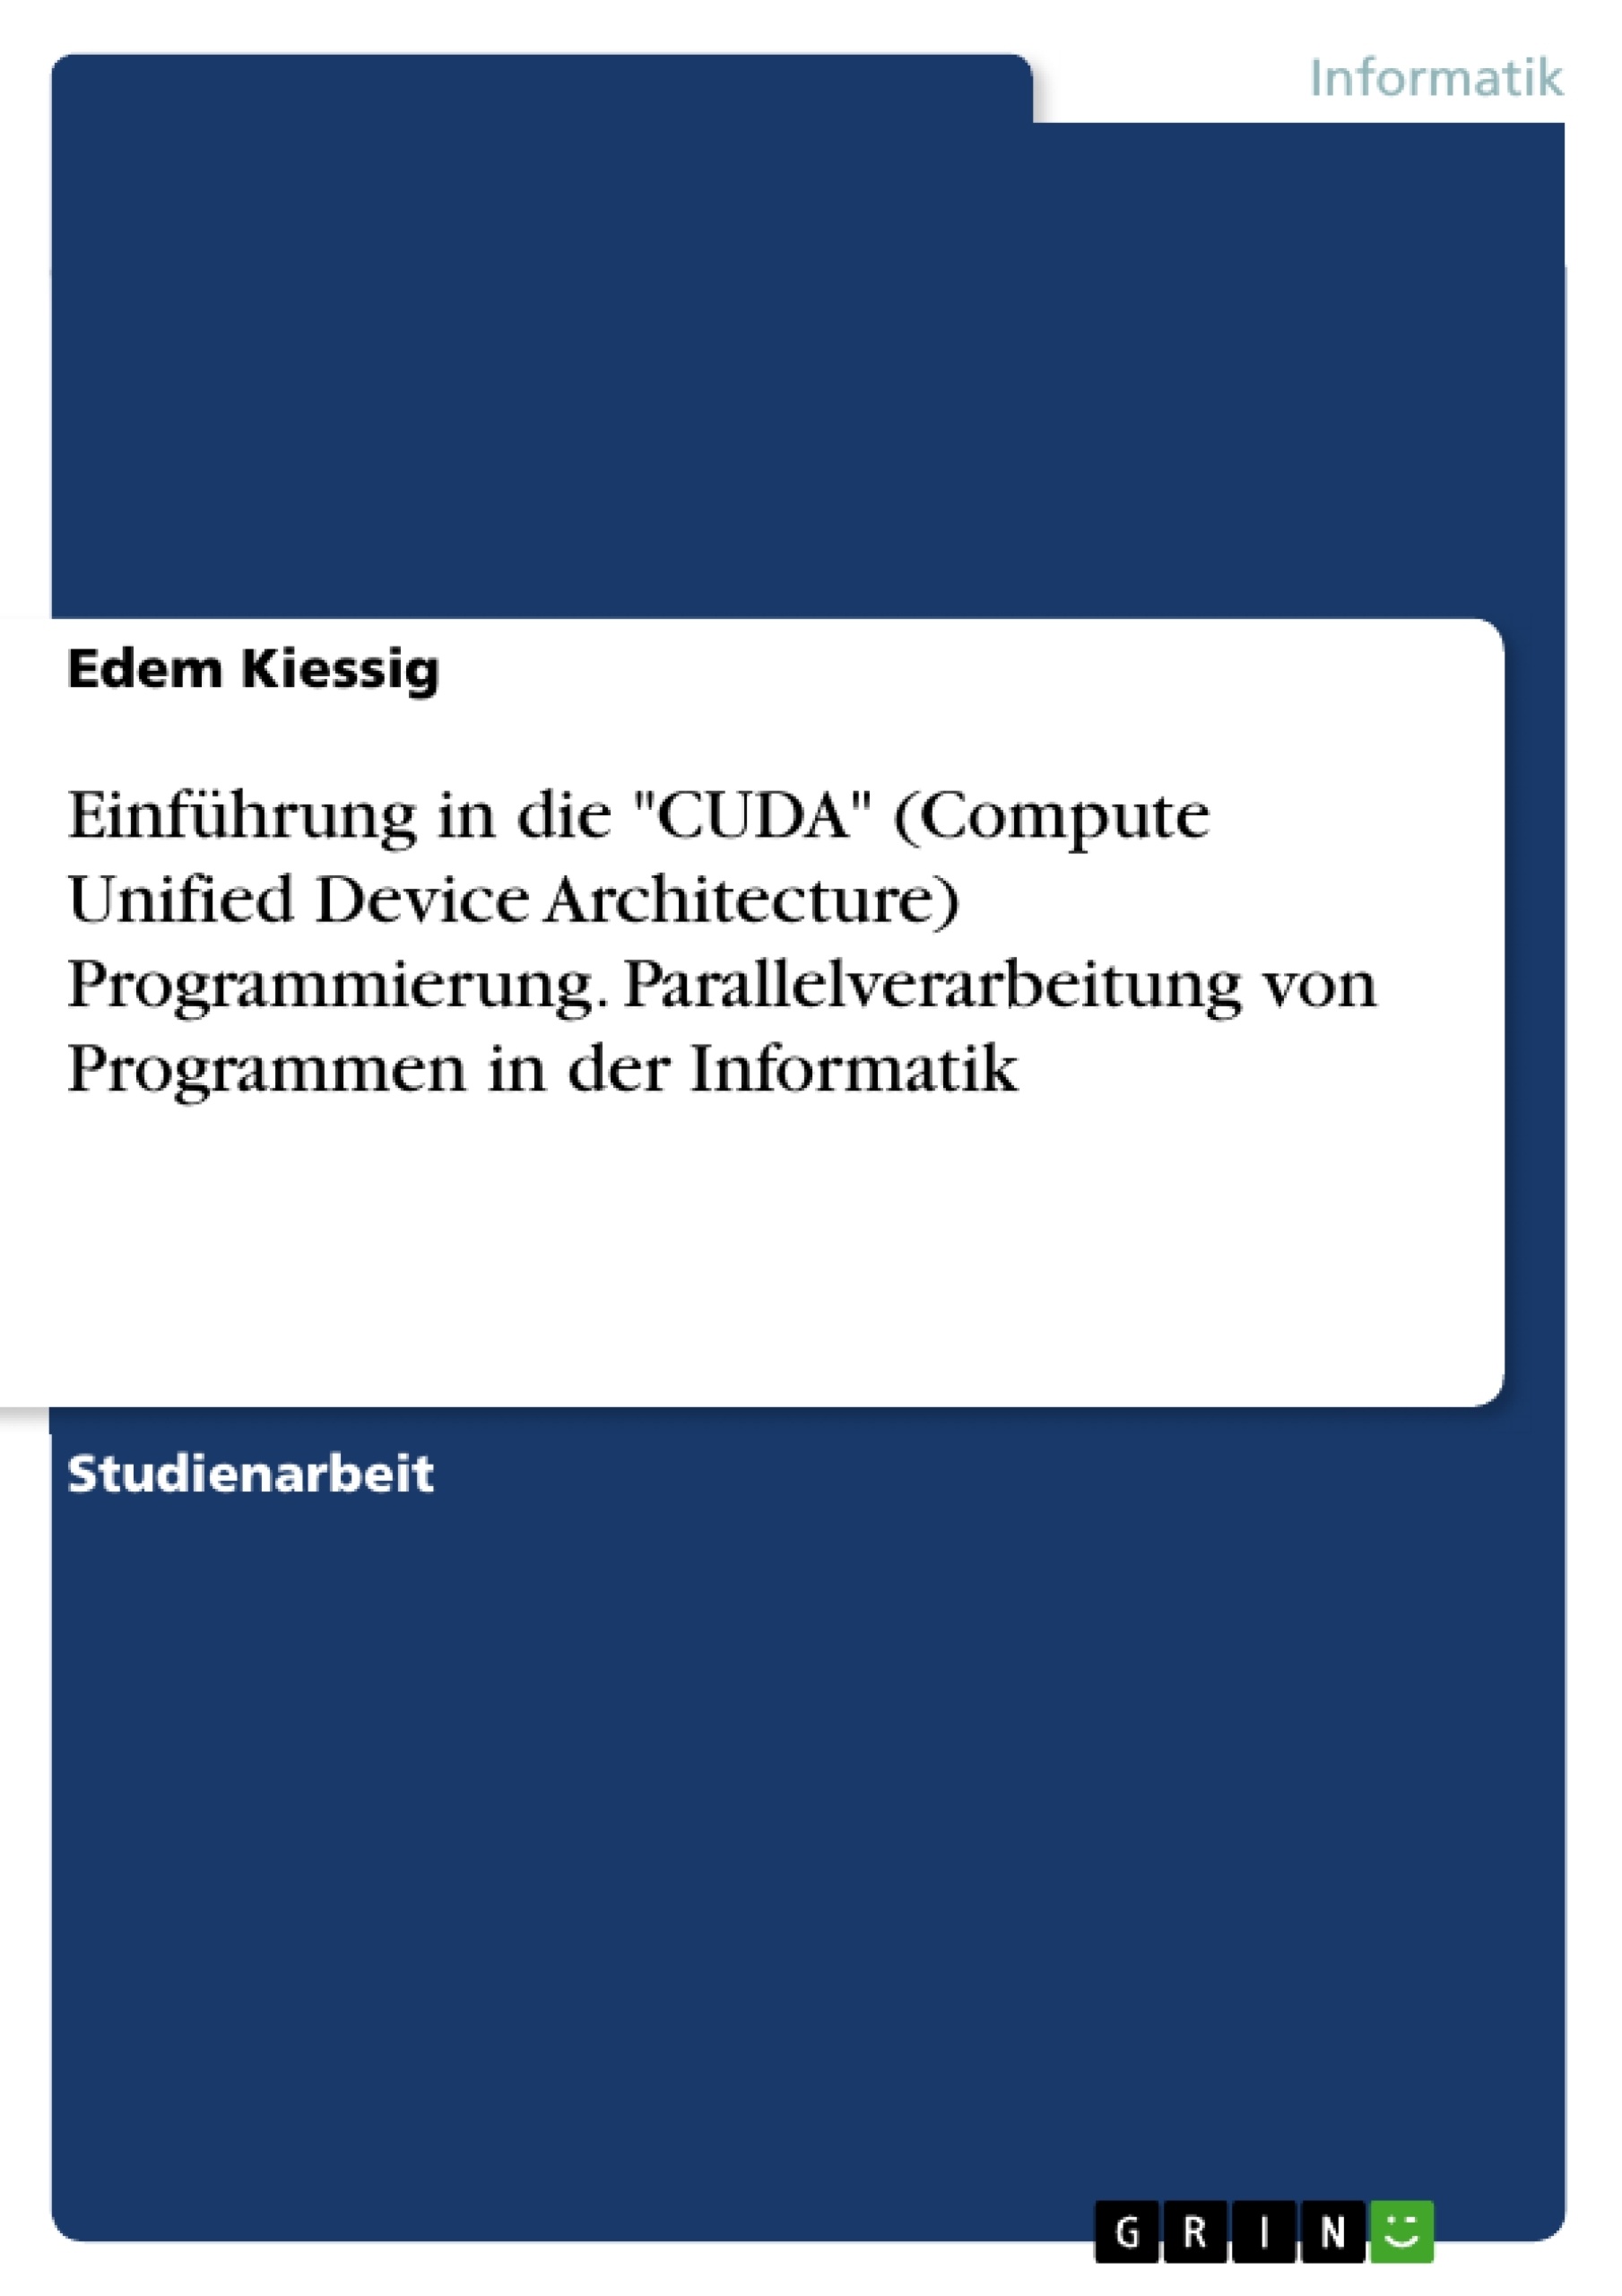 Título: Einführung in die "CUDA" (Compute Unified Device Architecture) Programmierung. Parallelverarbeitung von Programmen in der Informatik